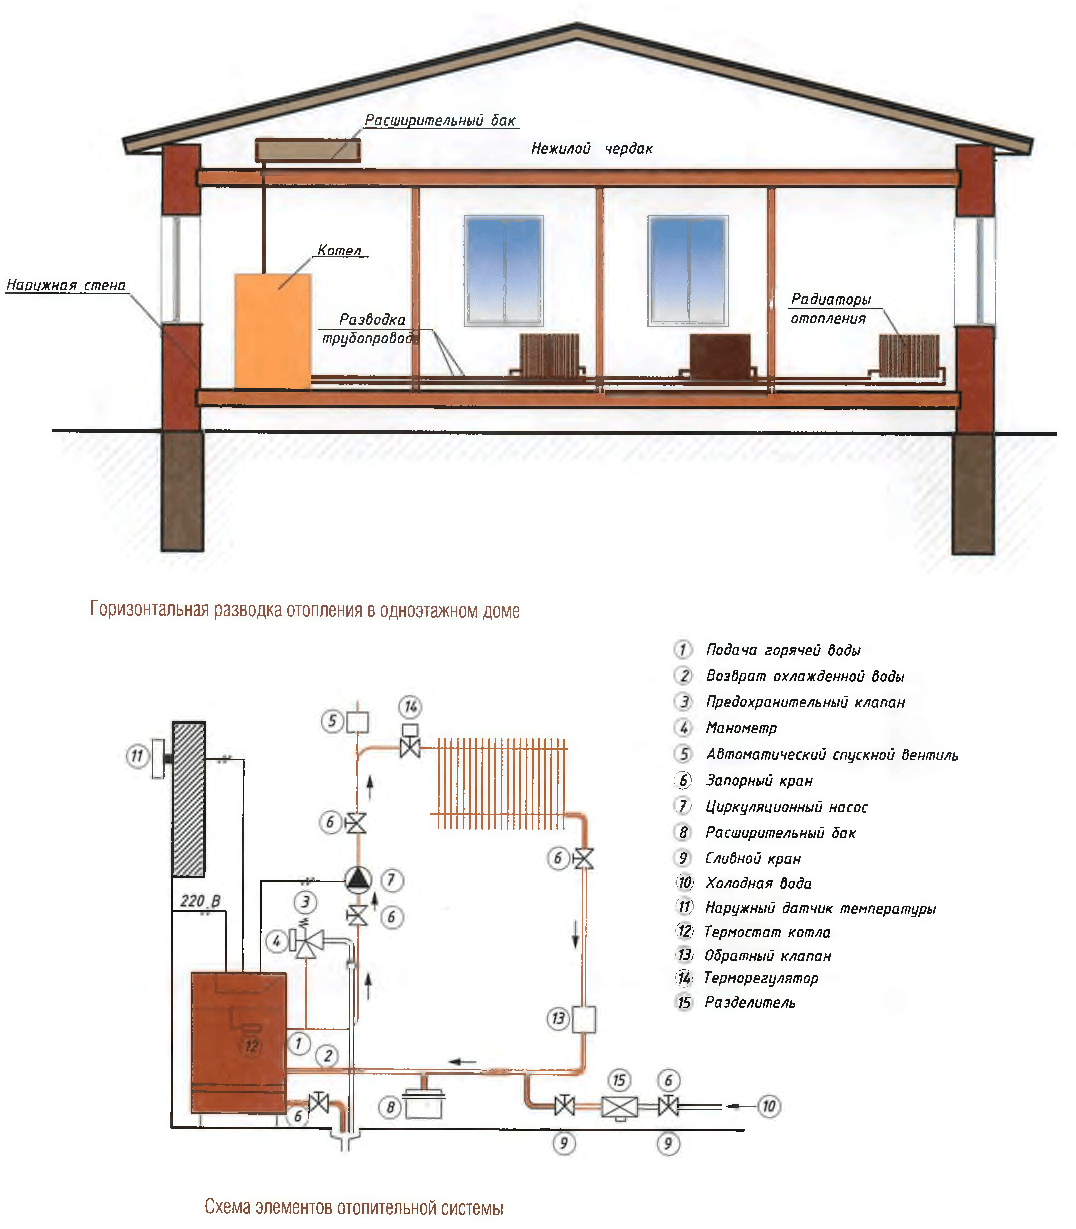 Делаем отопление одноэтажного дома своими руками: актуальность печного теплоснабжения, обзор схем, выбор котла и комплектующих